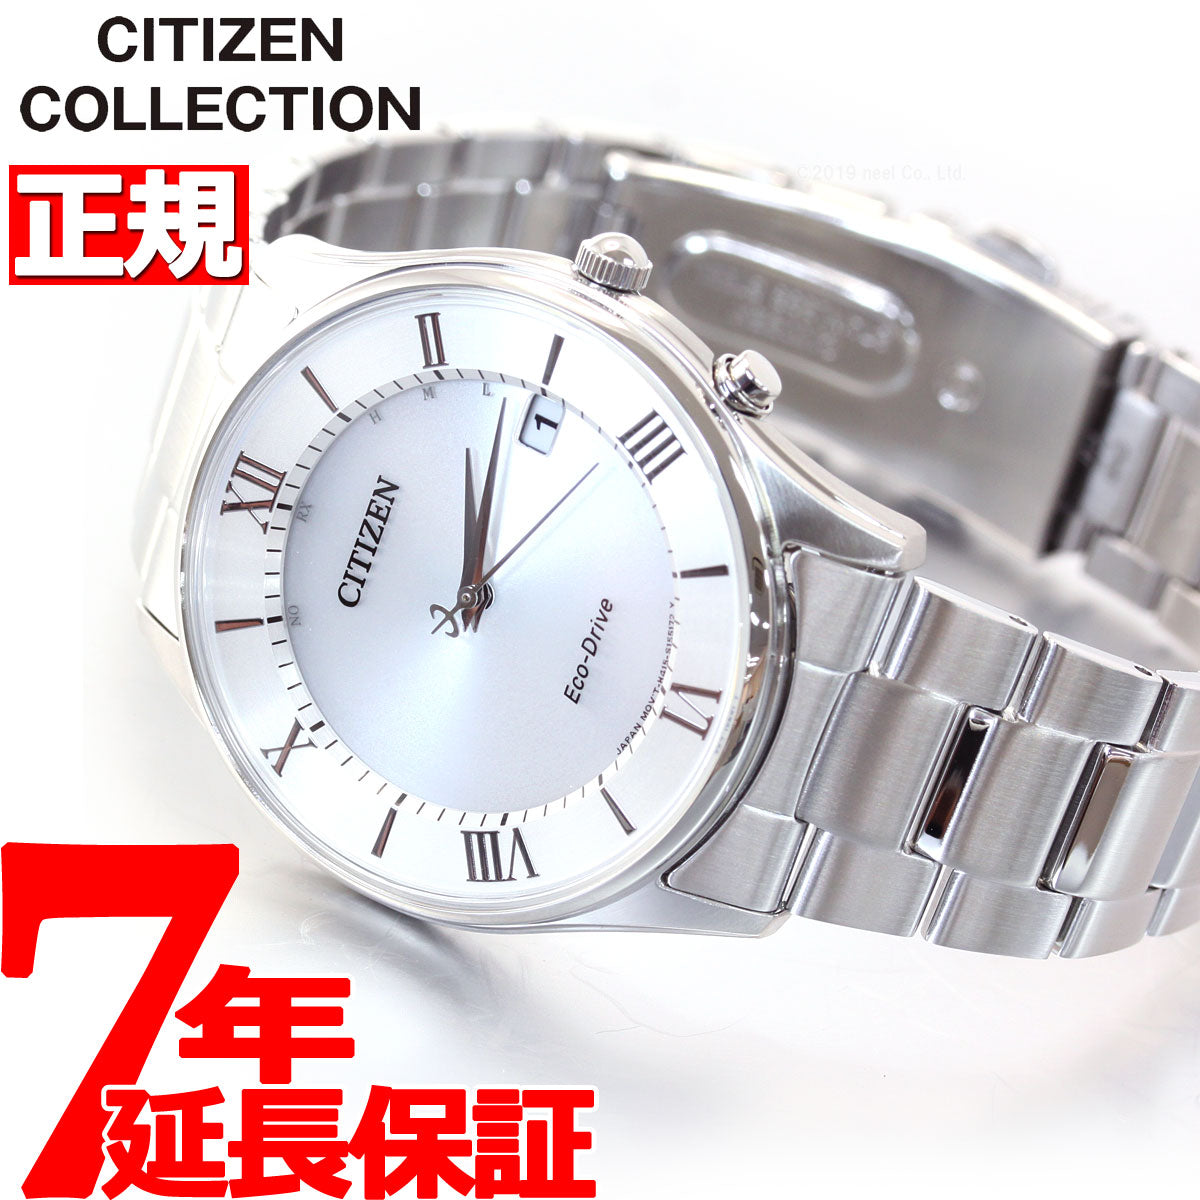 シチズンコレクション CITIZEN COLLECTION エコドライブ ソーラー 電波時計 腕時計 メンズ AS1060-54A